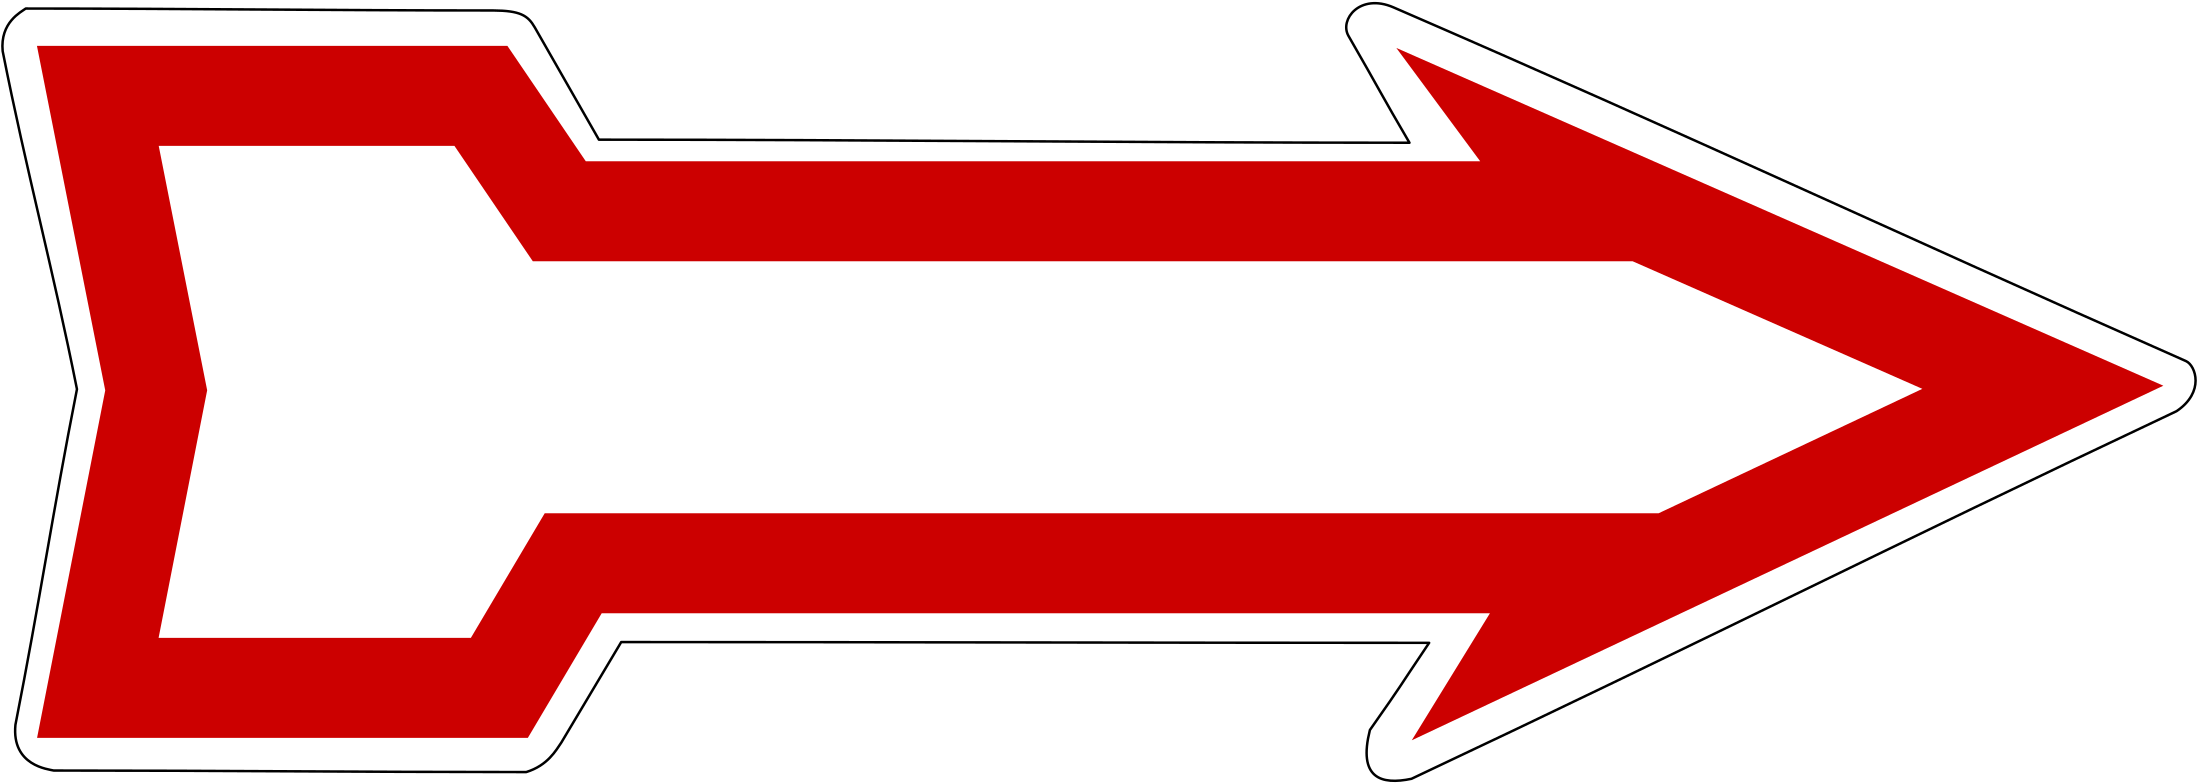 Historisches Deutsches Verkehrszeichen Rechts Fahren - Historisches Deutsches Verkehrszeichen Rechts Fahren (2220x800)